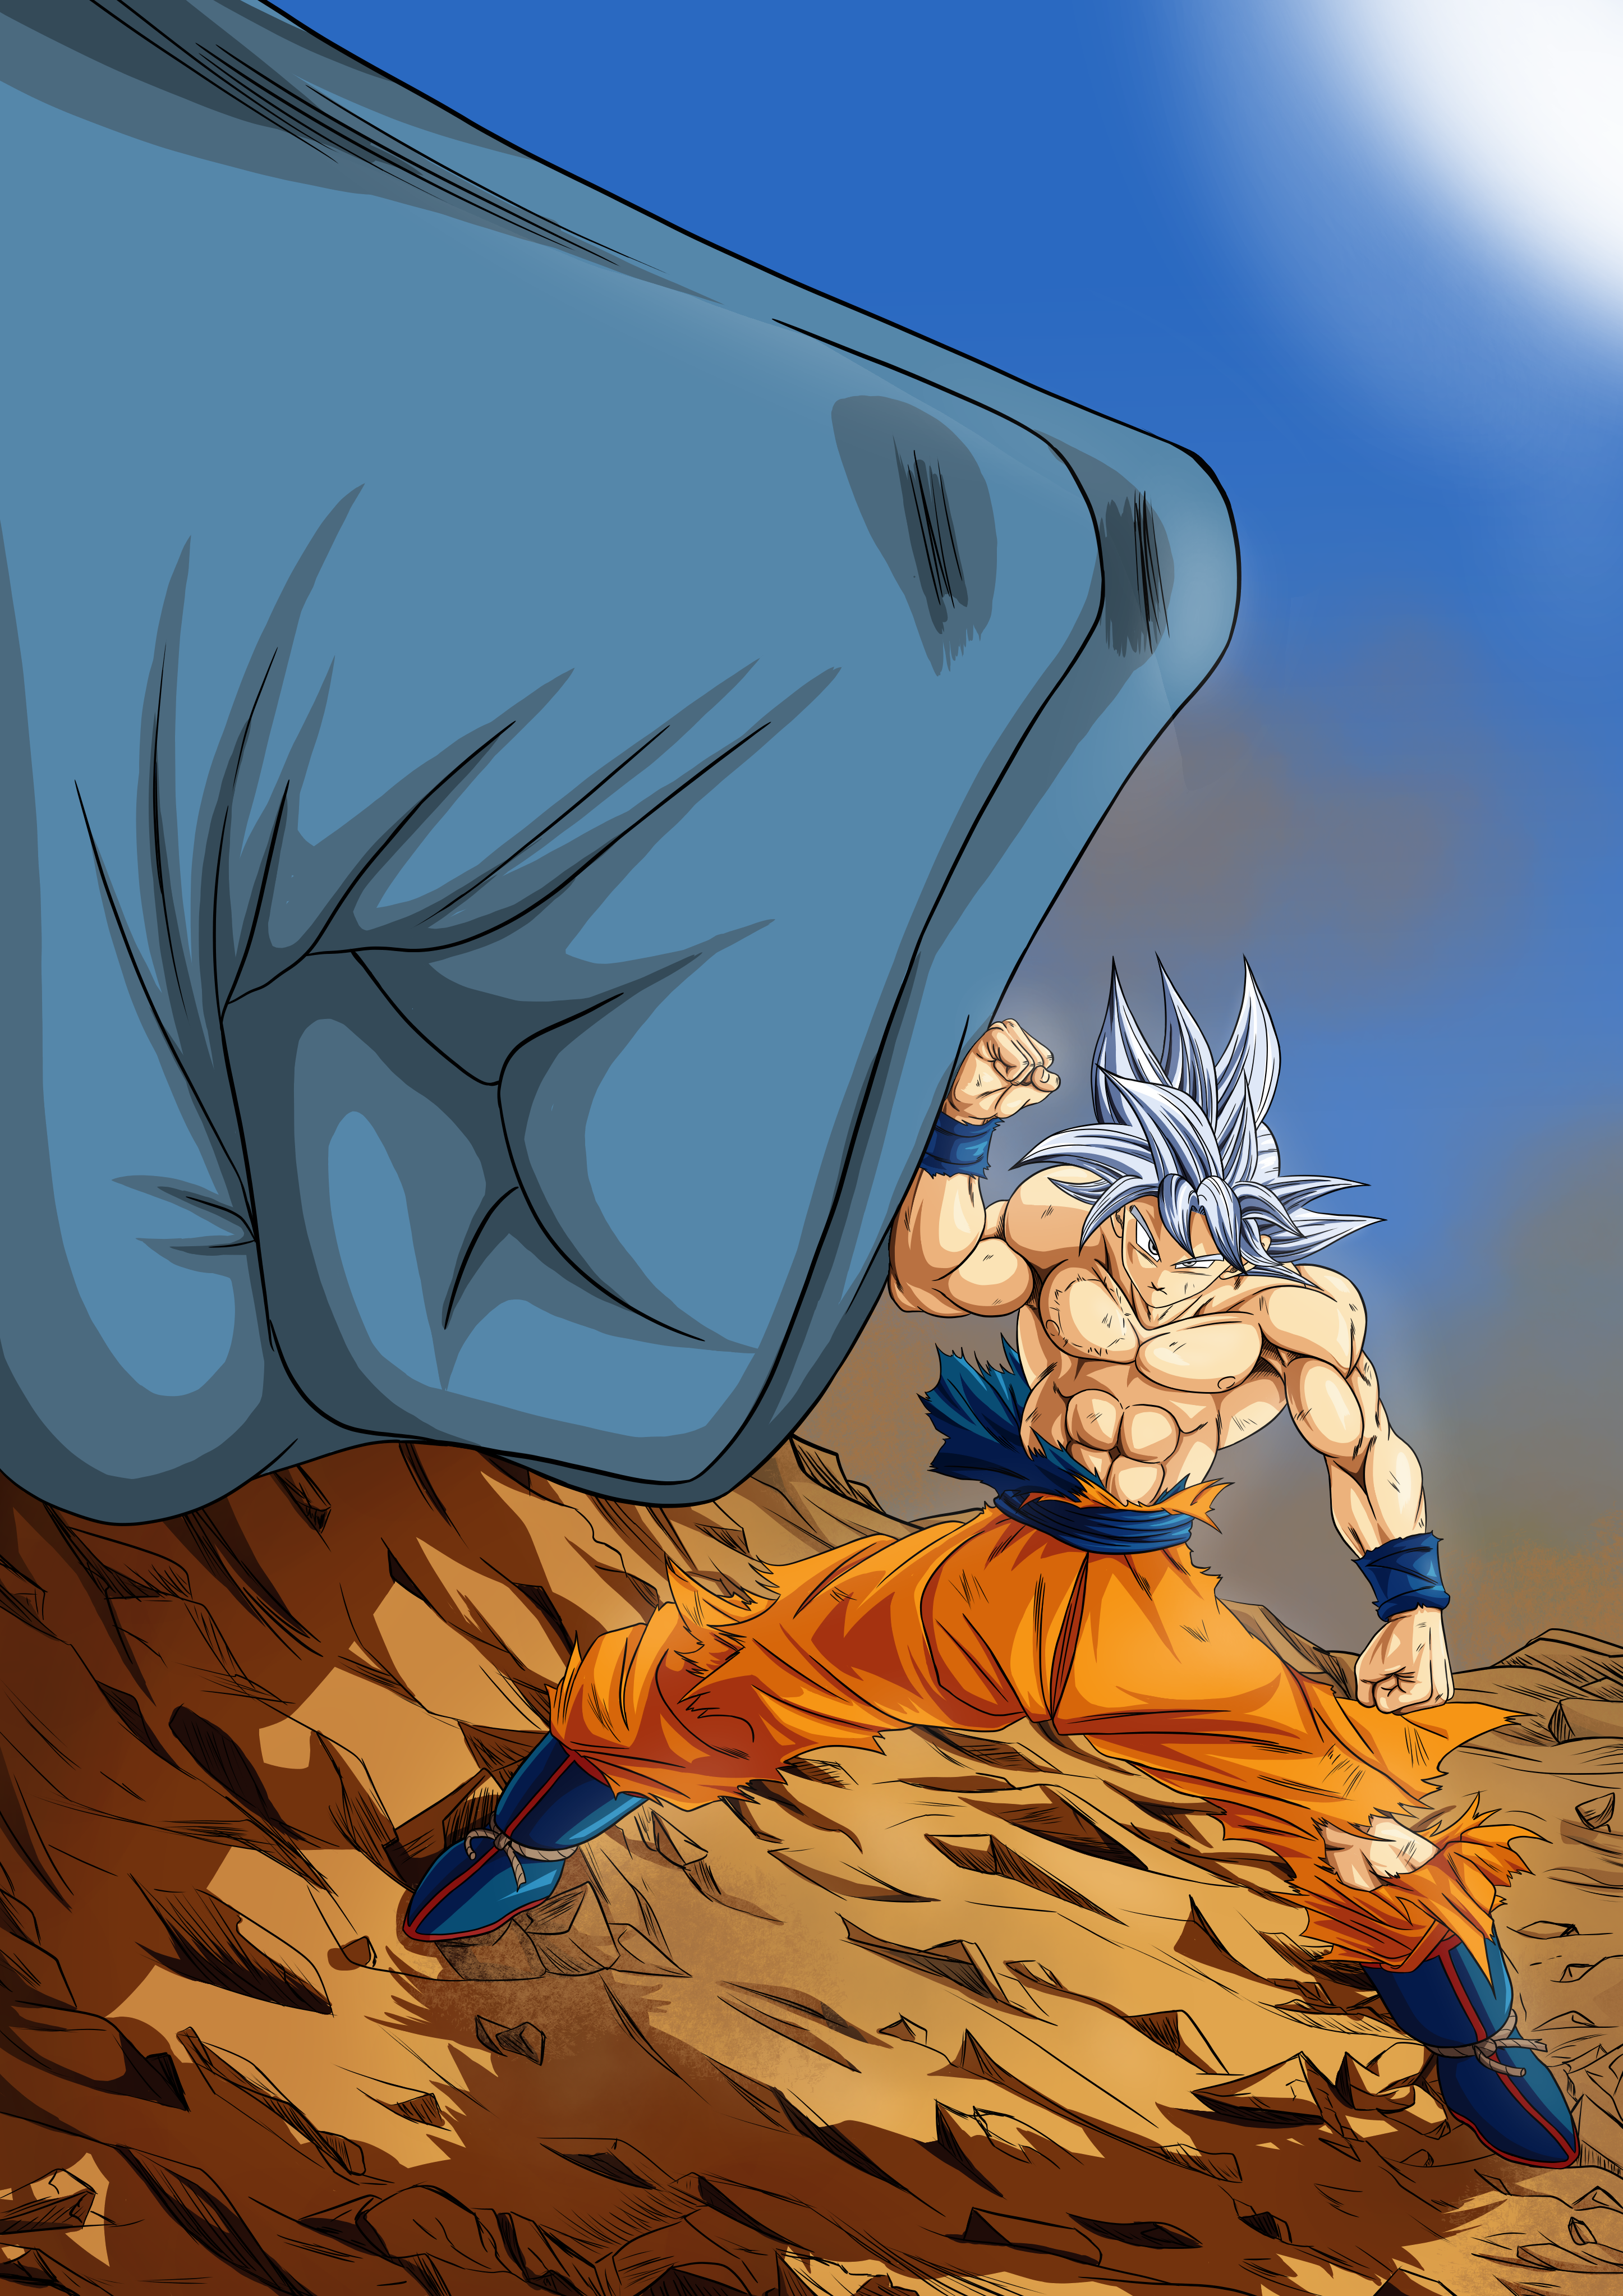 Backup Mangás - Goku Instinto Superior do Capìtulo 66 do Mangá de Dragon  Ball Super. Colorido por @JuniorToriyama